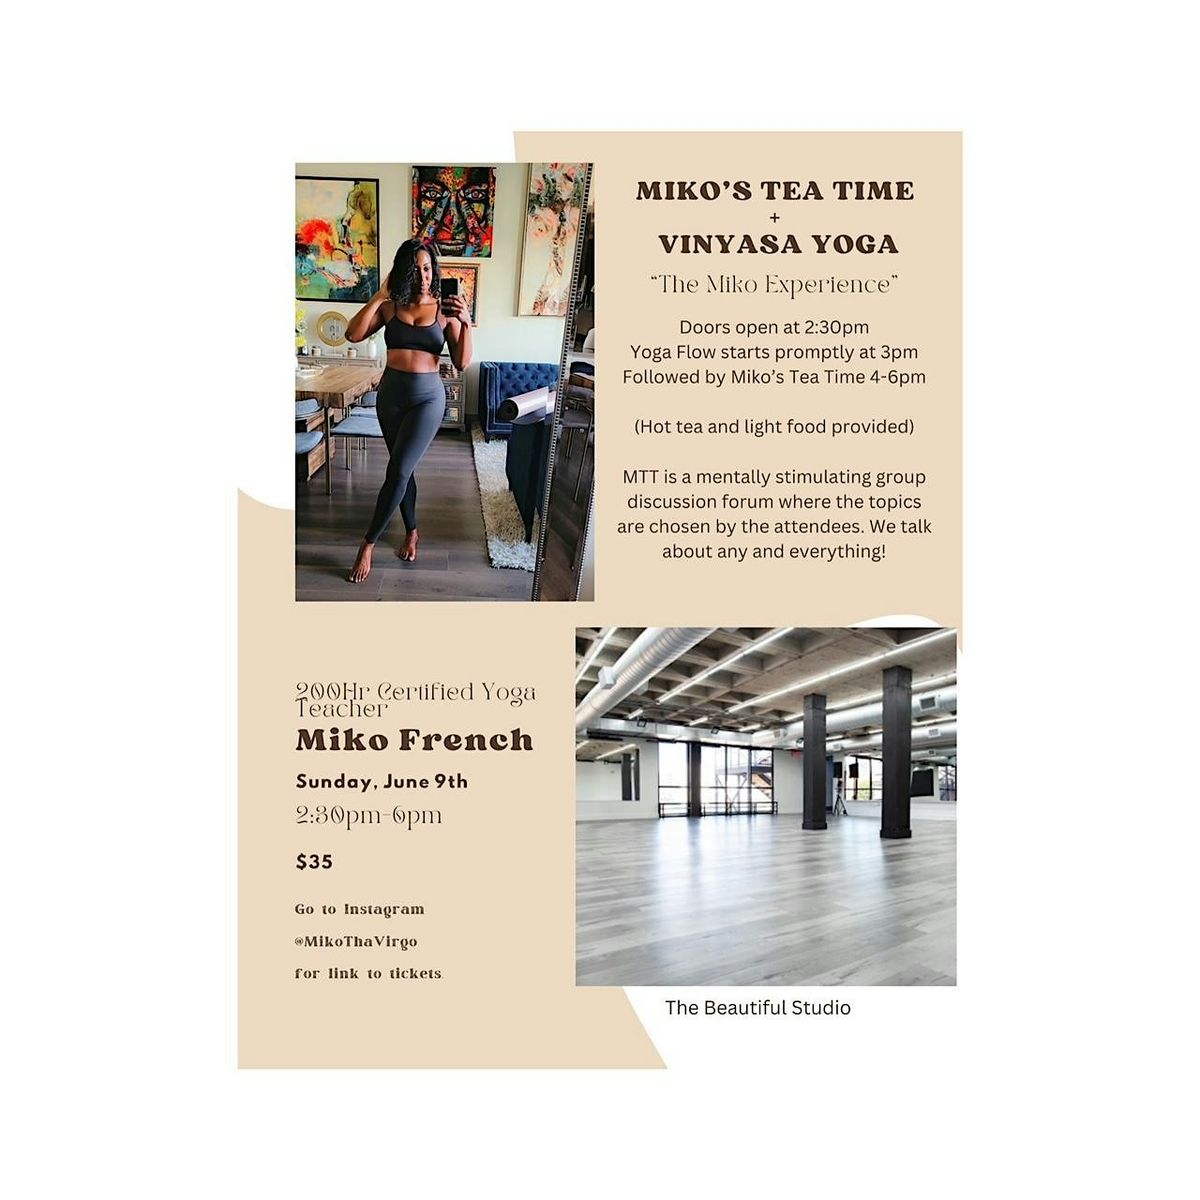 Miko's Tea Time + Vinyasa Yoga "The Miko Experience"